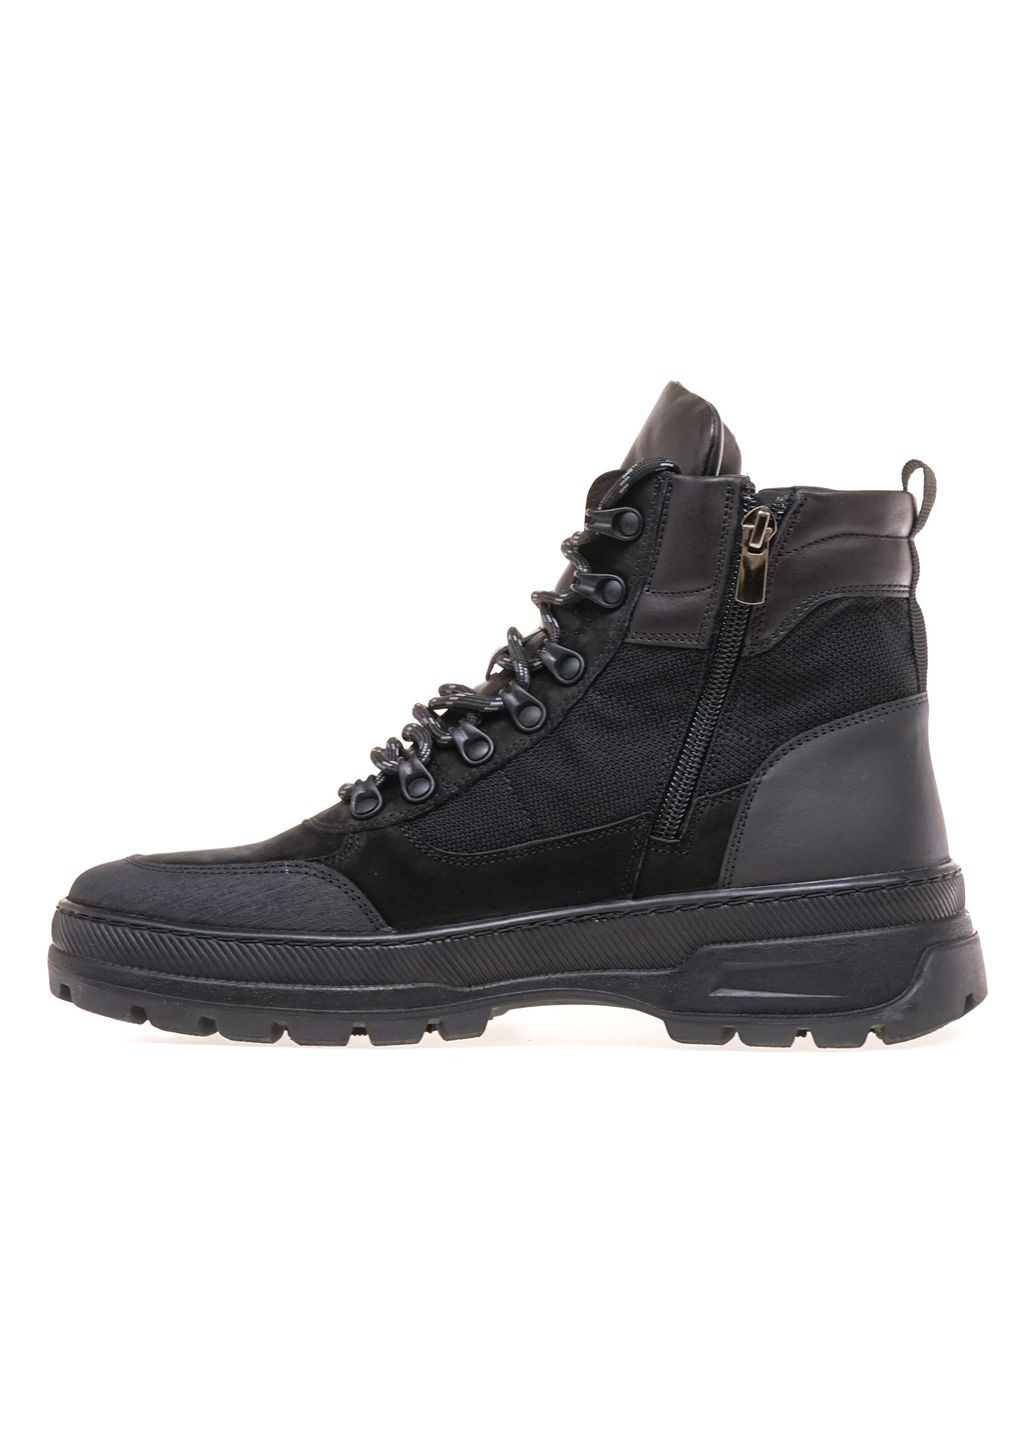 Черные зимние ботинки комфорт 8369-75-st/black Goodboots